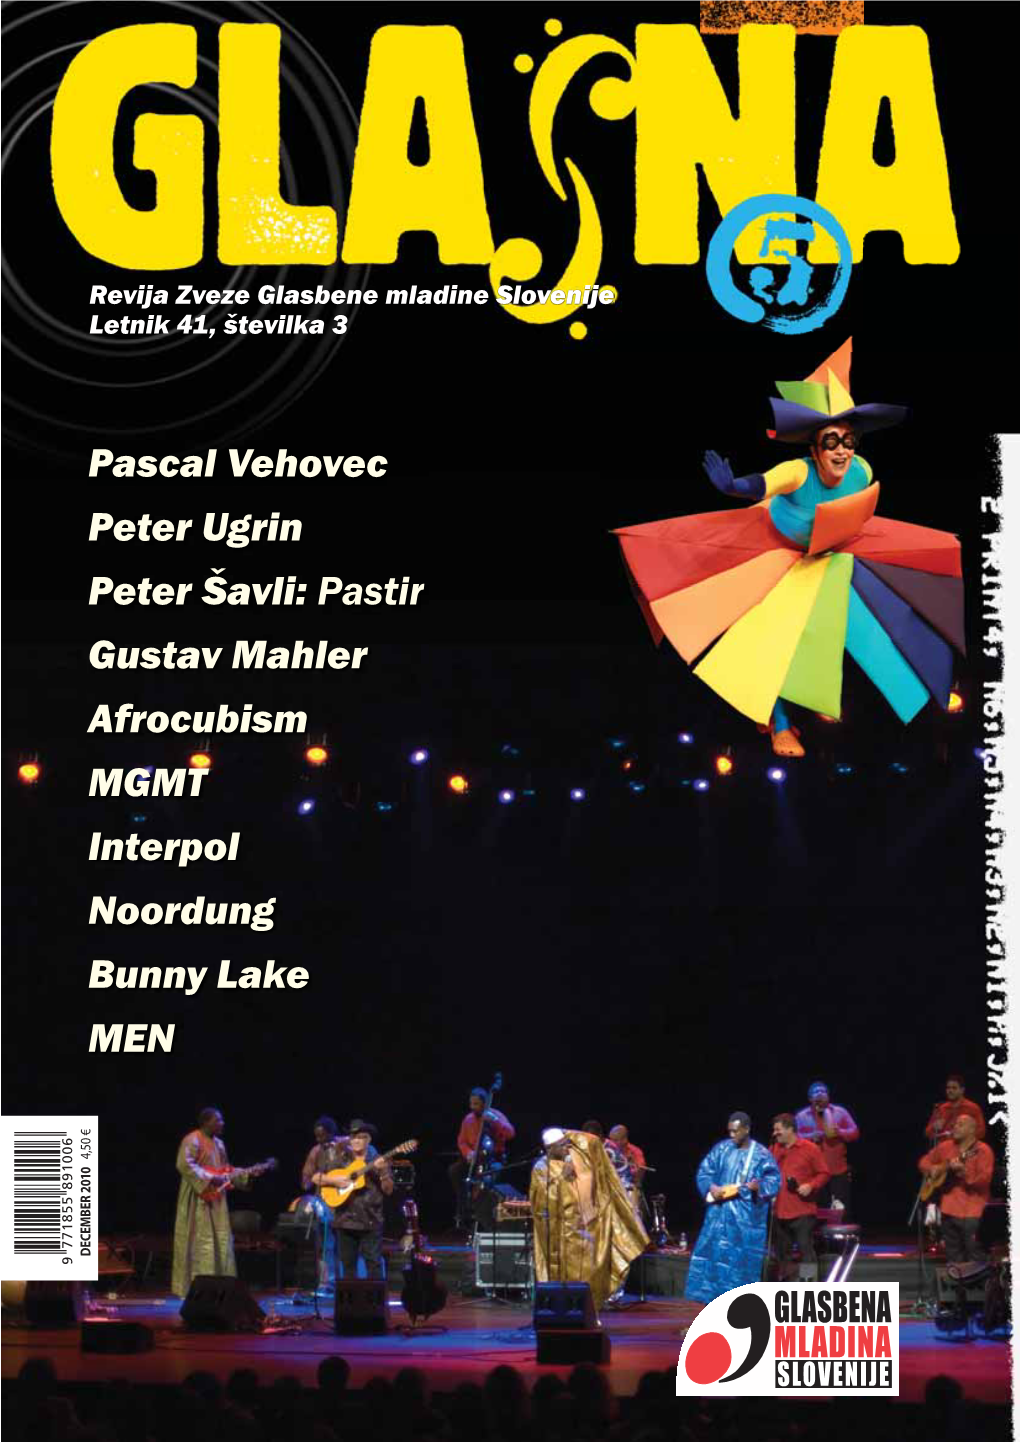 Glasna Št. 5, Letnik 41 (December 2010)